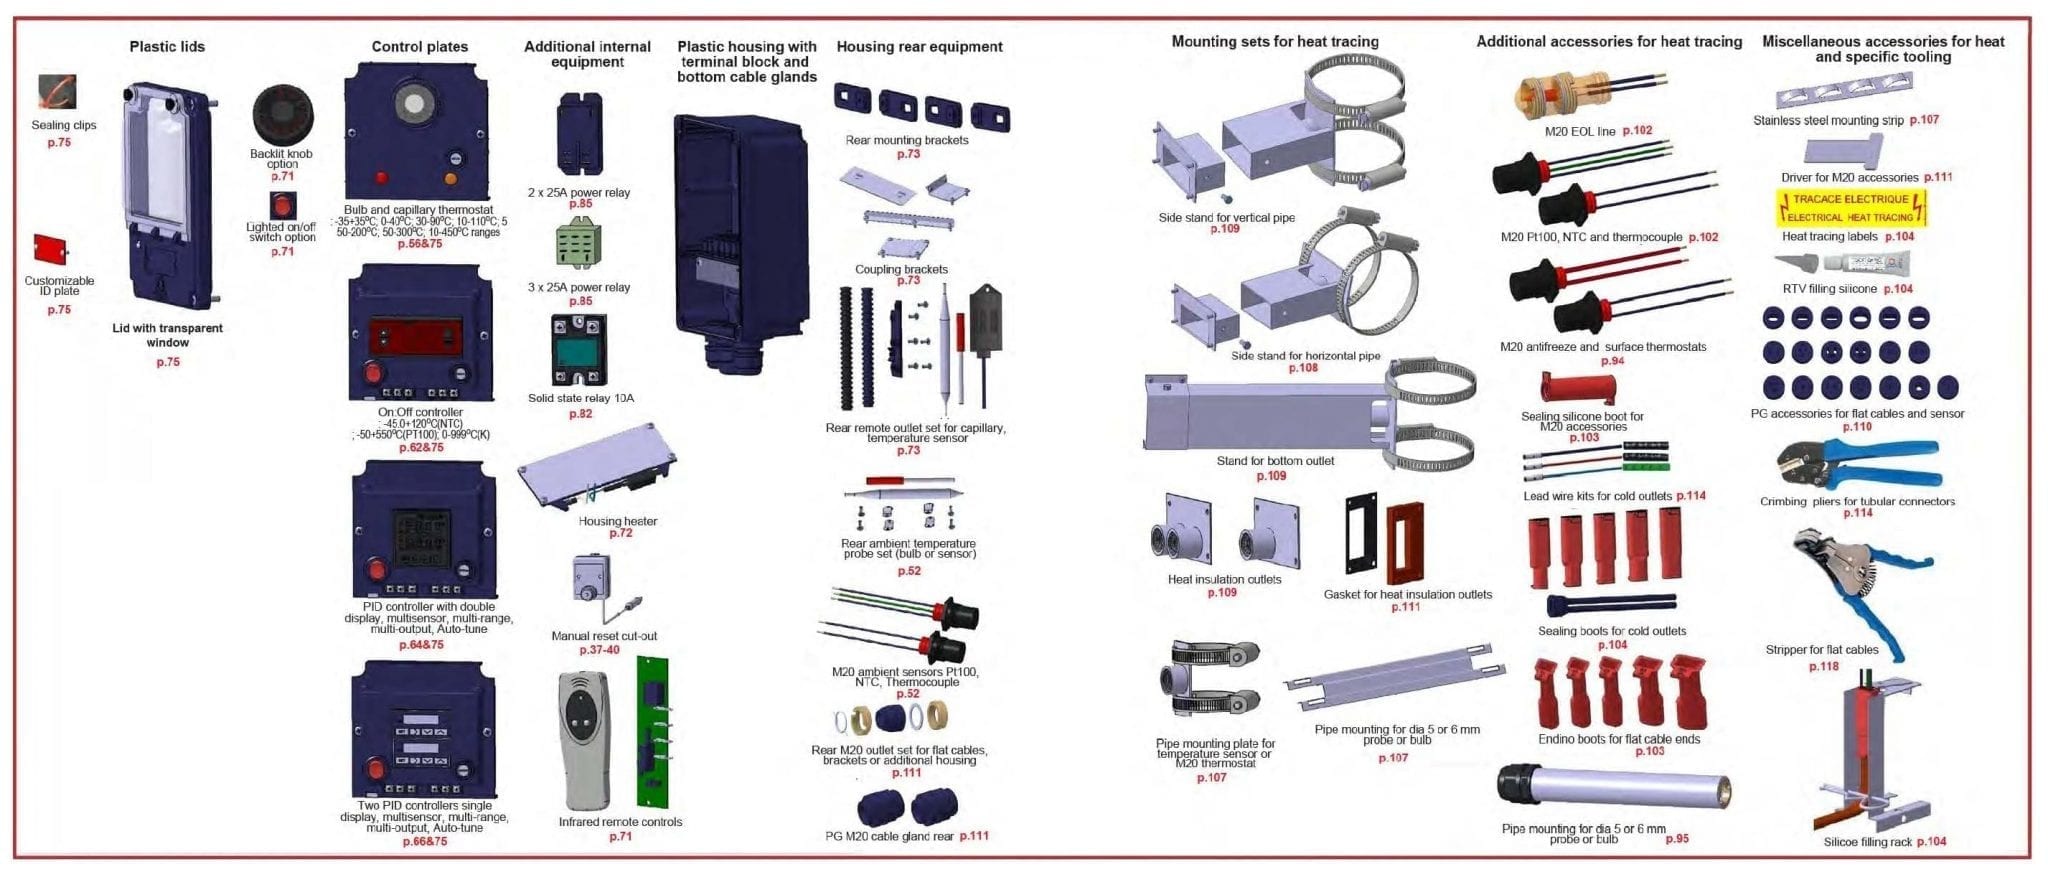 Tableau synoptique des principaux boitiers de contrôle et accessoires de traçage électrique